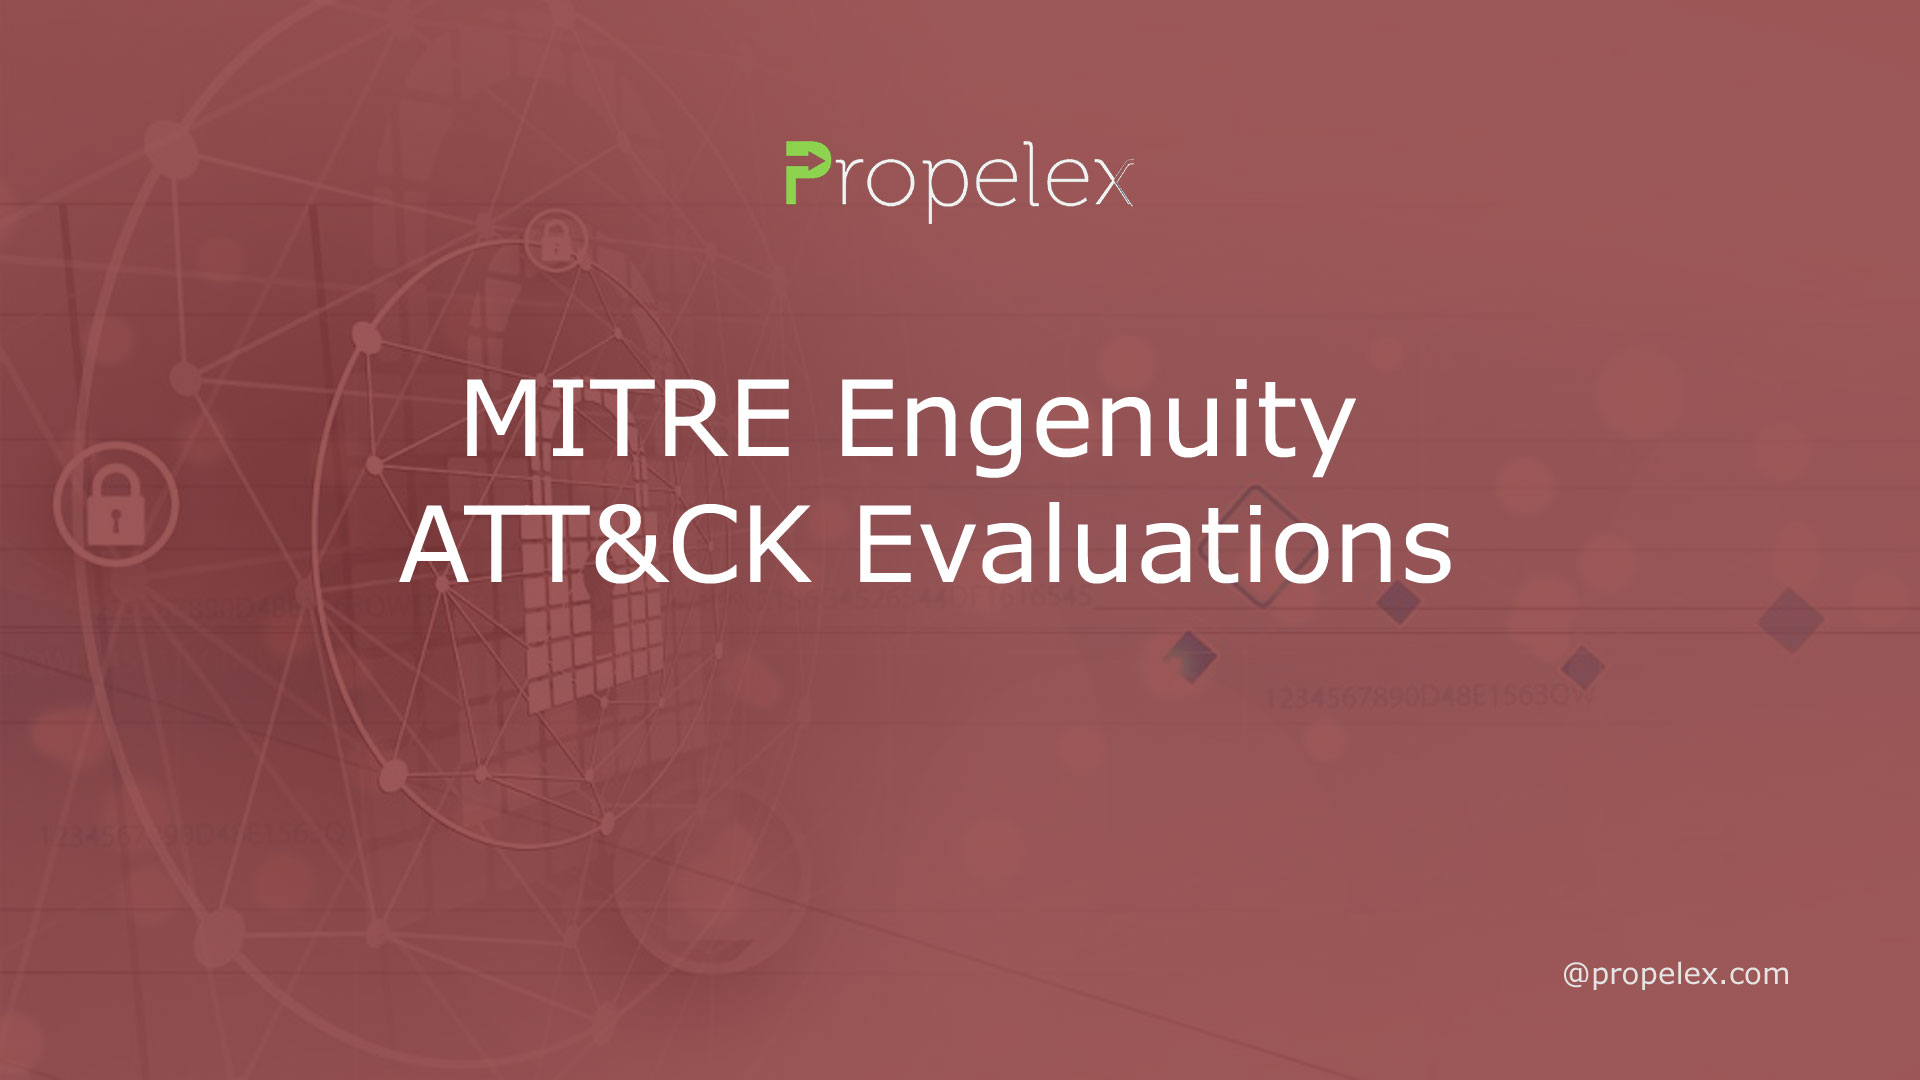 MITRE Engenuity ATT&CK Evaluations